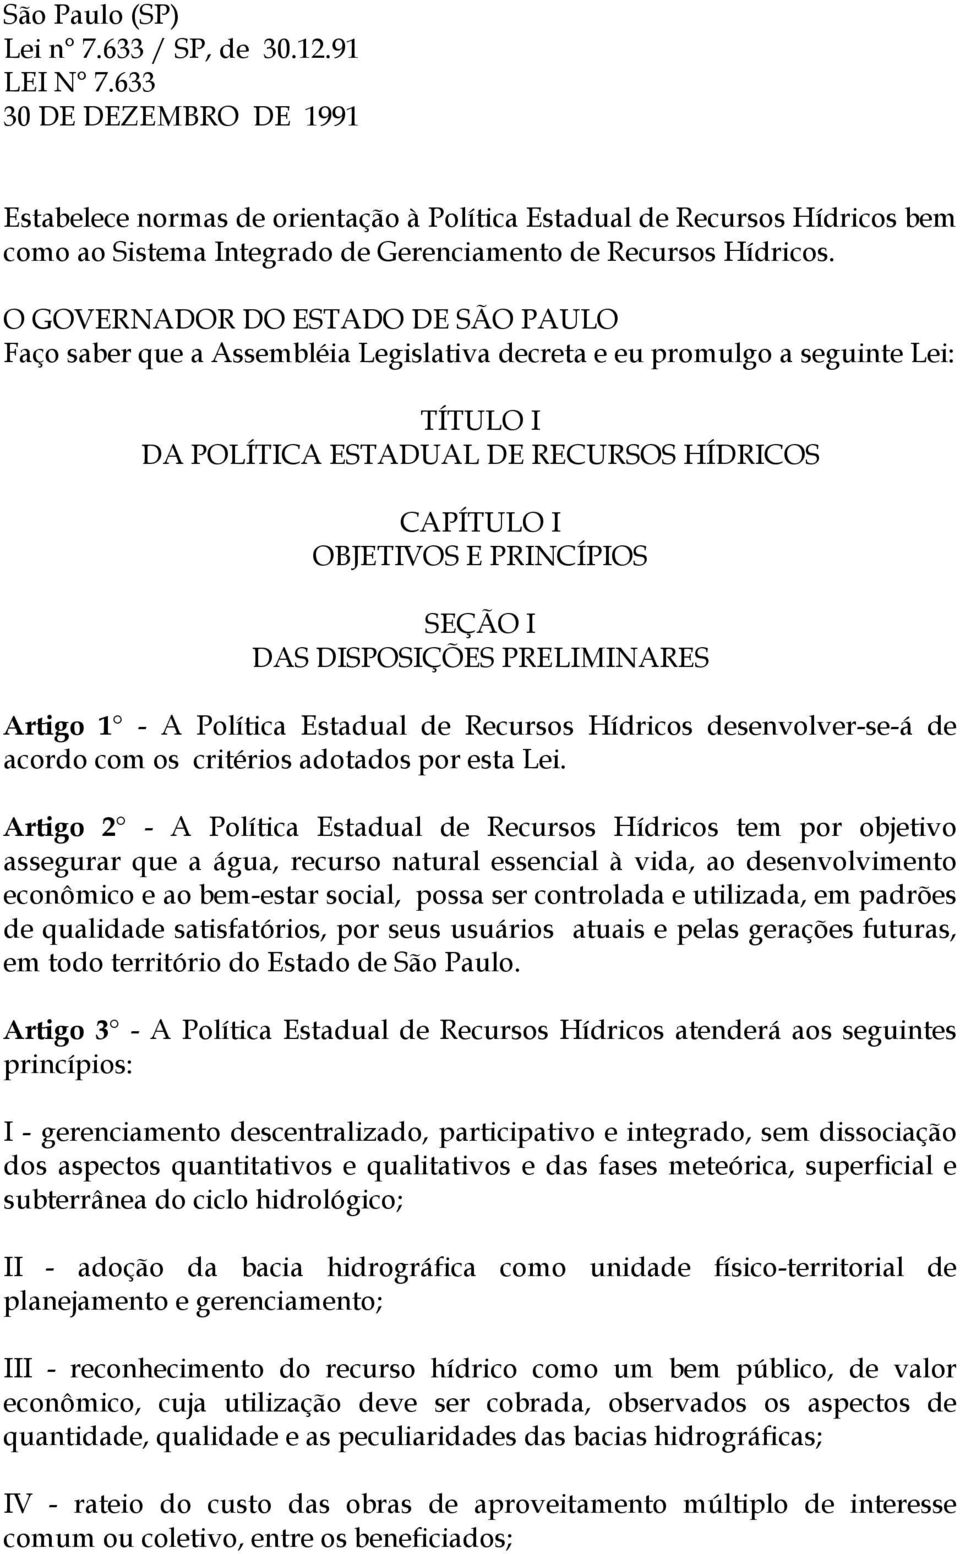 O GOVERNADOR DO ESTADO DE SÃO PAULO Faço saber que a Assembléia Legislativa decreta e eu promulgo a seguinte Lei: TÍTULO I DA POLÍTICA ESTADUAL DE RECURSOS HÍDRICOS CAPÍTULO I OBJETIVOS E PRINCÍPIOS